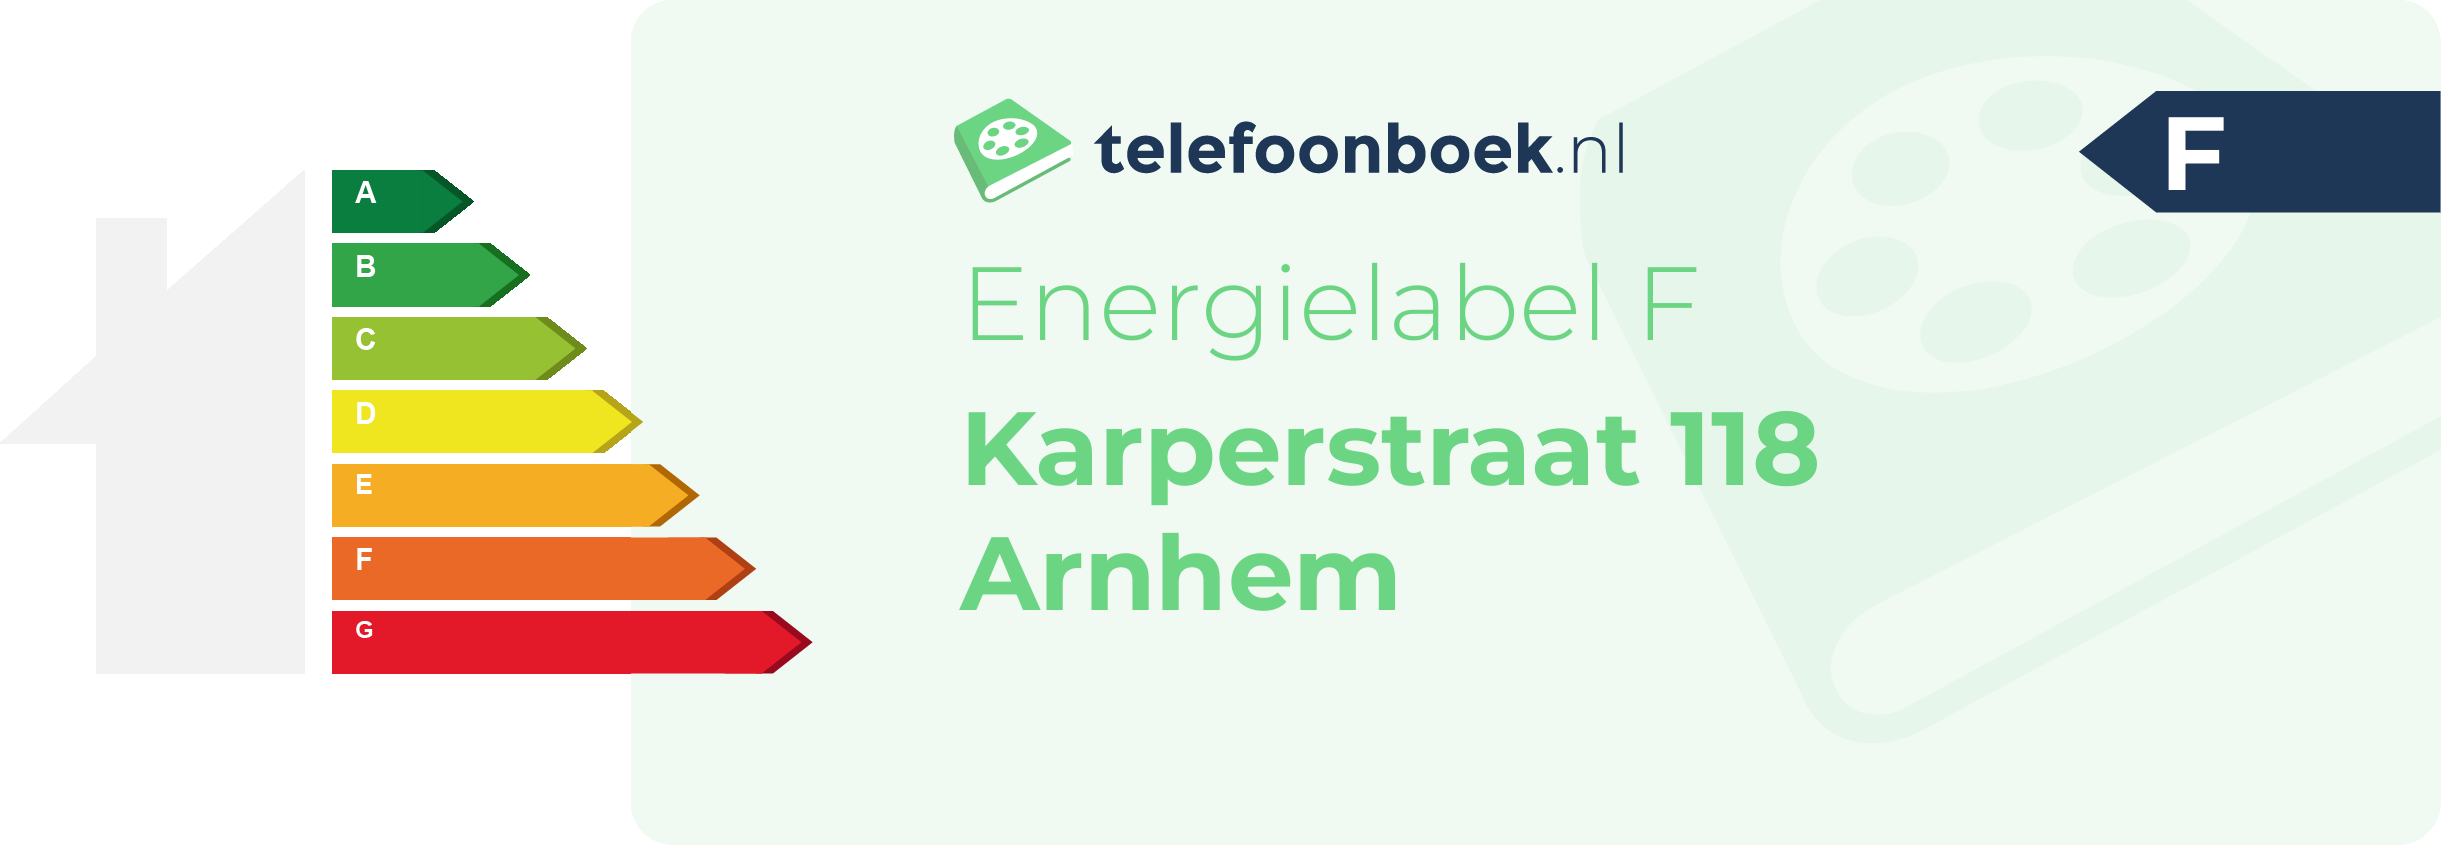 Energielabel Karperstraat 118 Arnhem